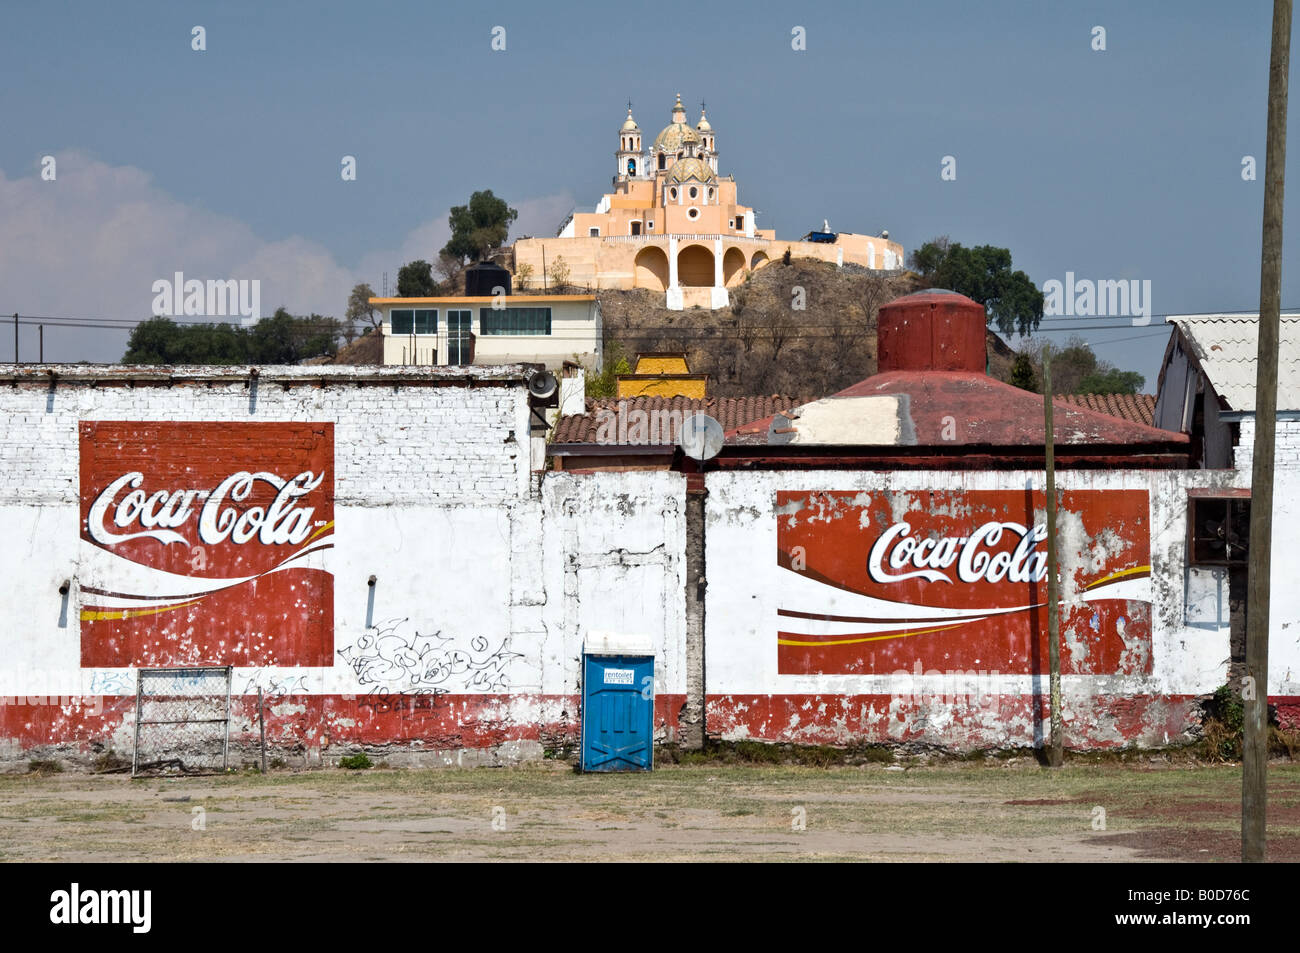 La chiesa di Nuestra Señora de los Remedios, seduto sulla sommità della piramide nascosta in Cholula, Messico. Indicazioni per la Coca Cola troppo! Foto Stock